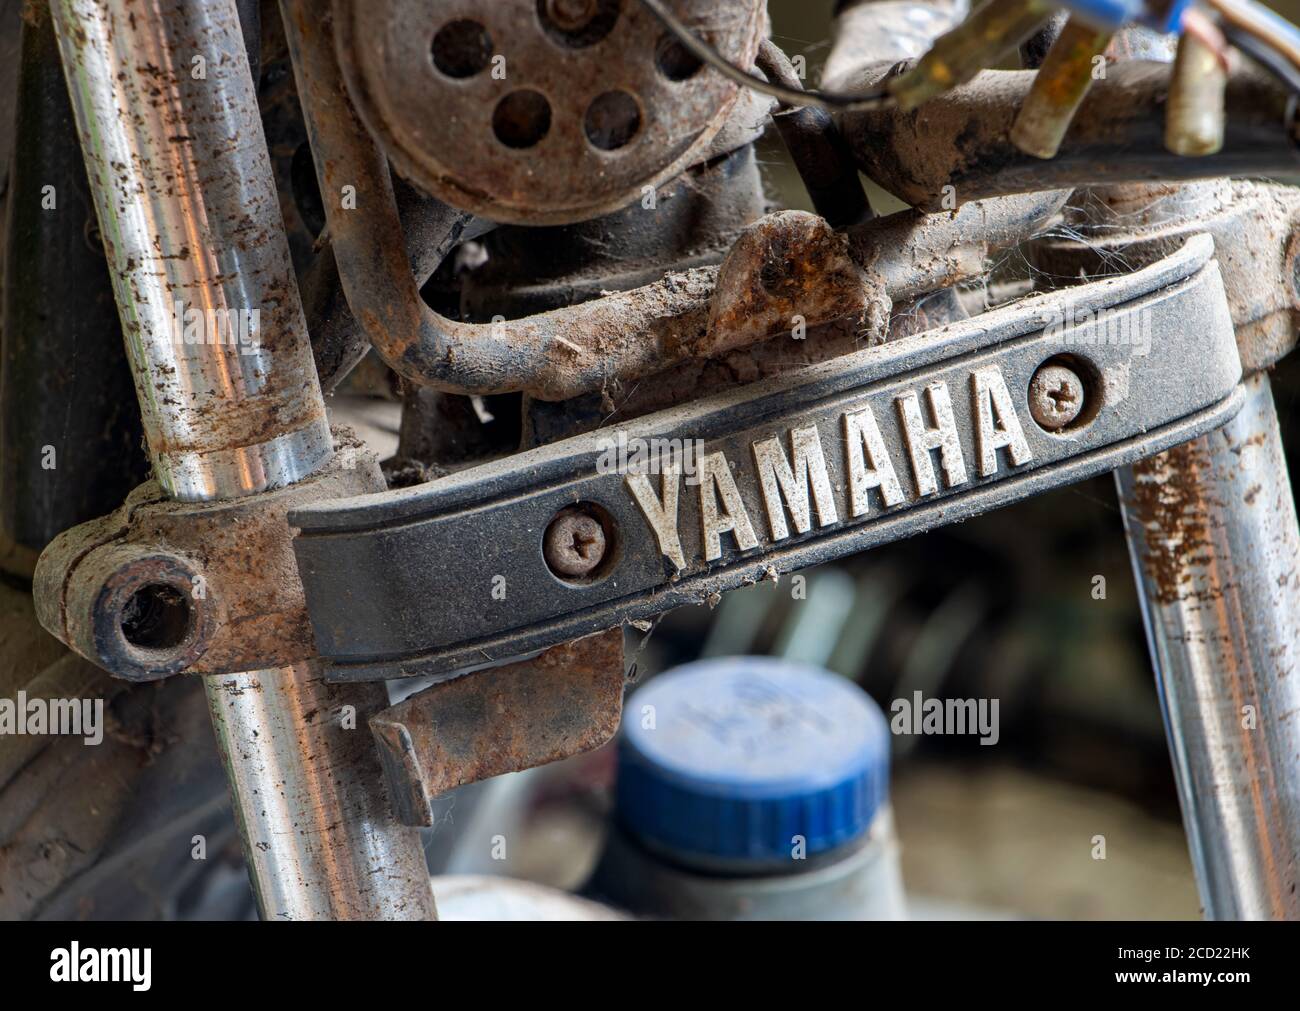 NAKHON NAYOK, THAÏLANDE, JUL 04 2020, moto démontée de la marque Yamaha. Moto en réparation à l'atelier d'entretien. Banque D'Images